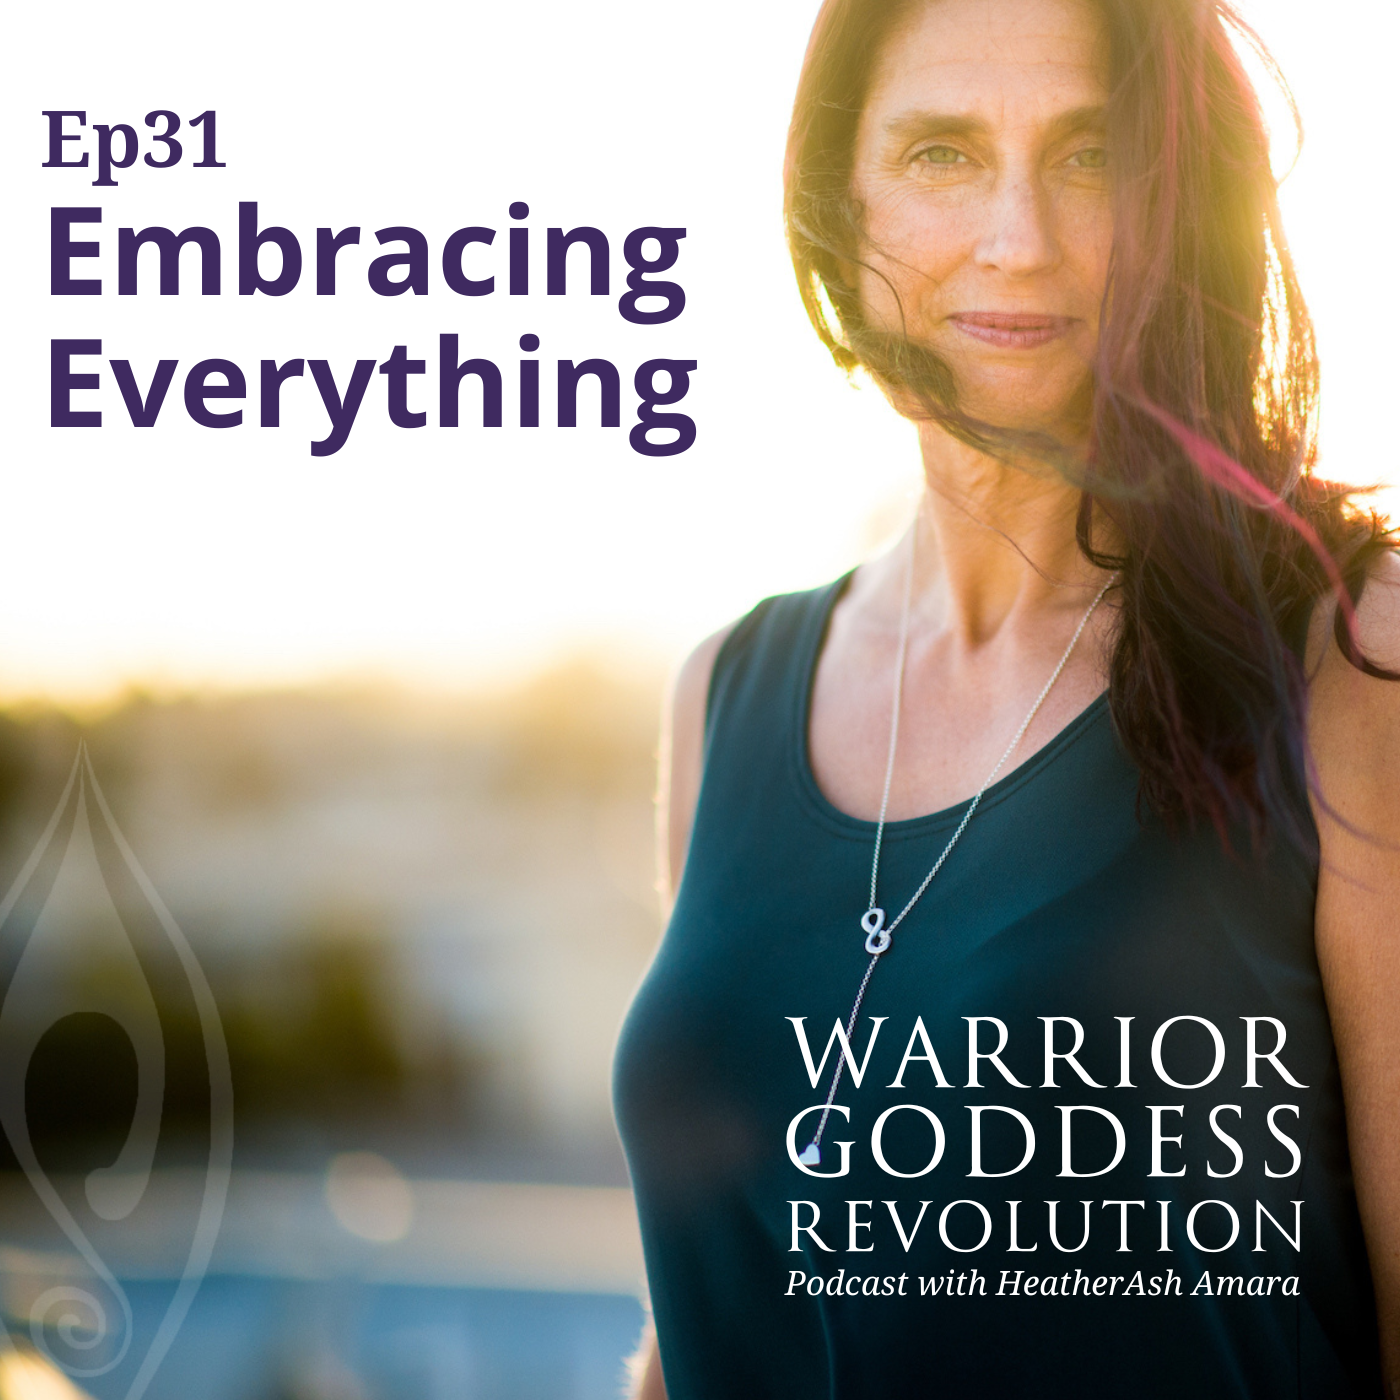 Artwork for podcast Warrior Goddess Revolution